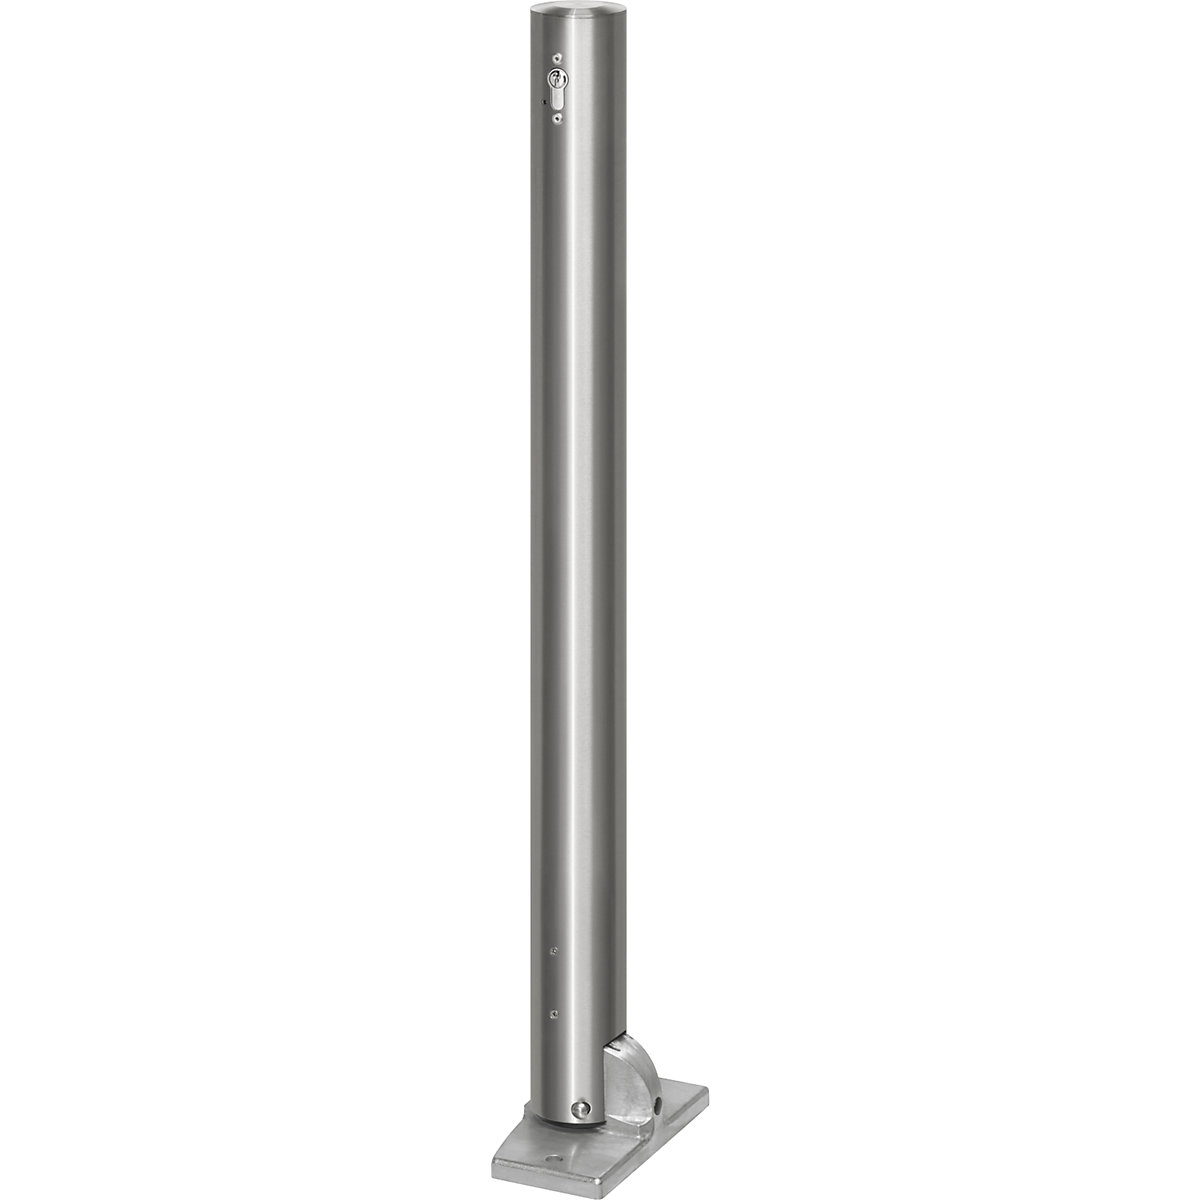 Stâlp de blocare din inox, cu cap plat, placă podea pentru fixare cu dibluri, Ø 76 mm, pliabil, profil cilindric